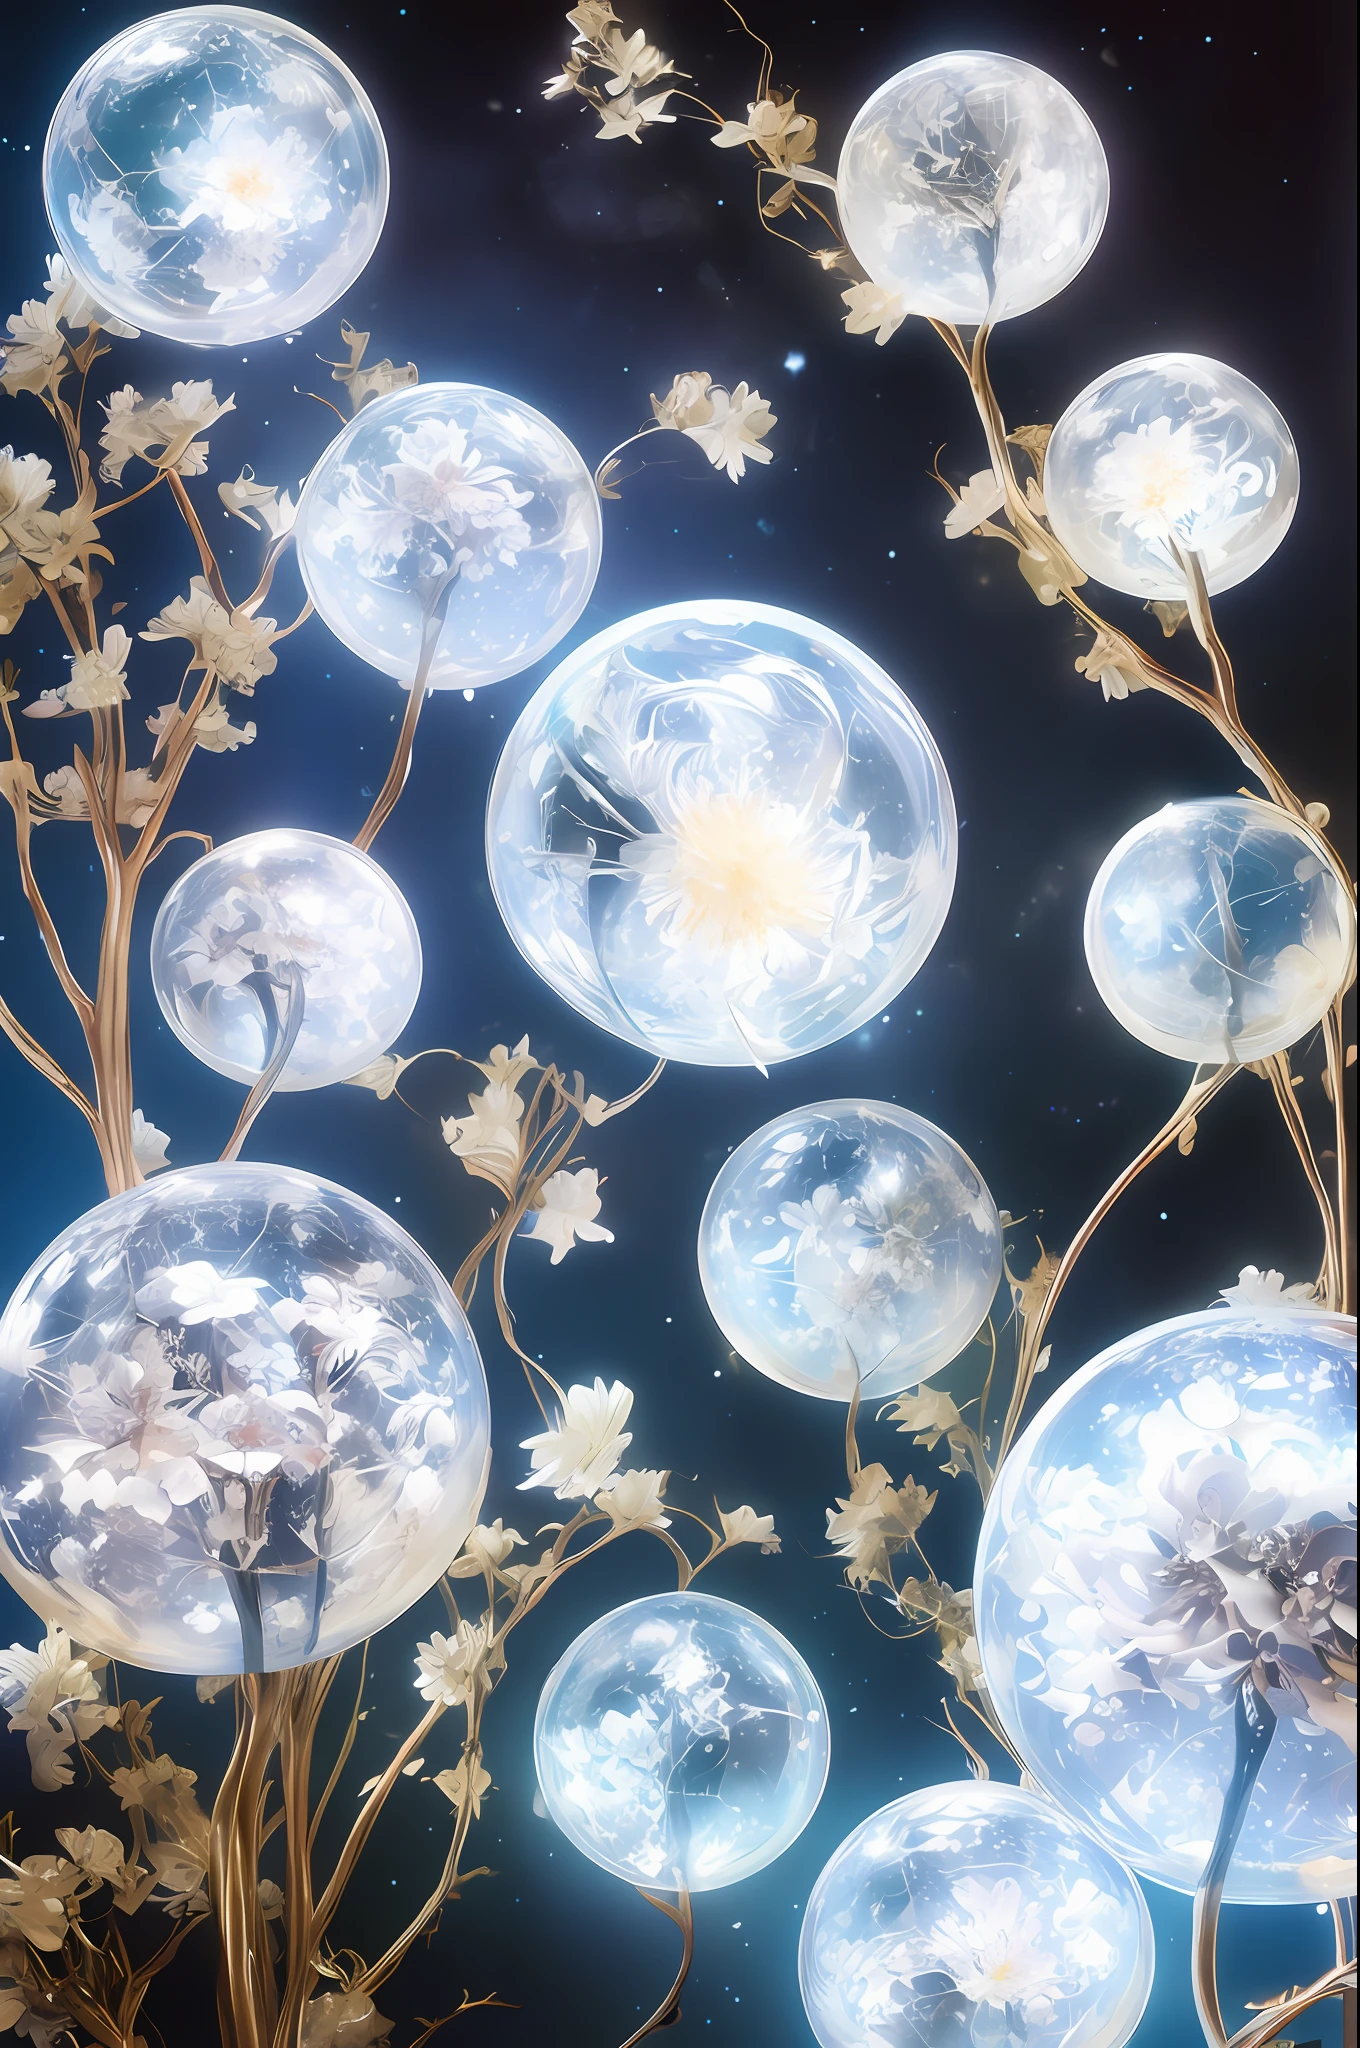 Un universo con estrellas，El Big Bang de las Estrellas，esfera energética，flores de cristal，Dragon Chino，la luna